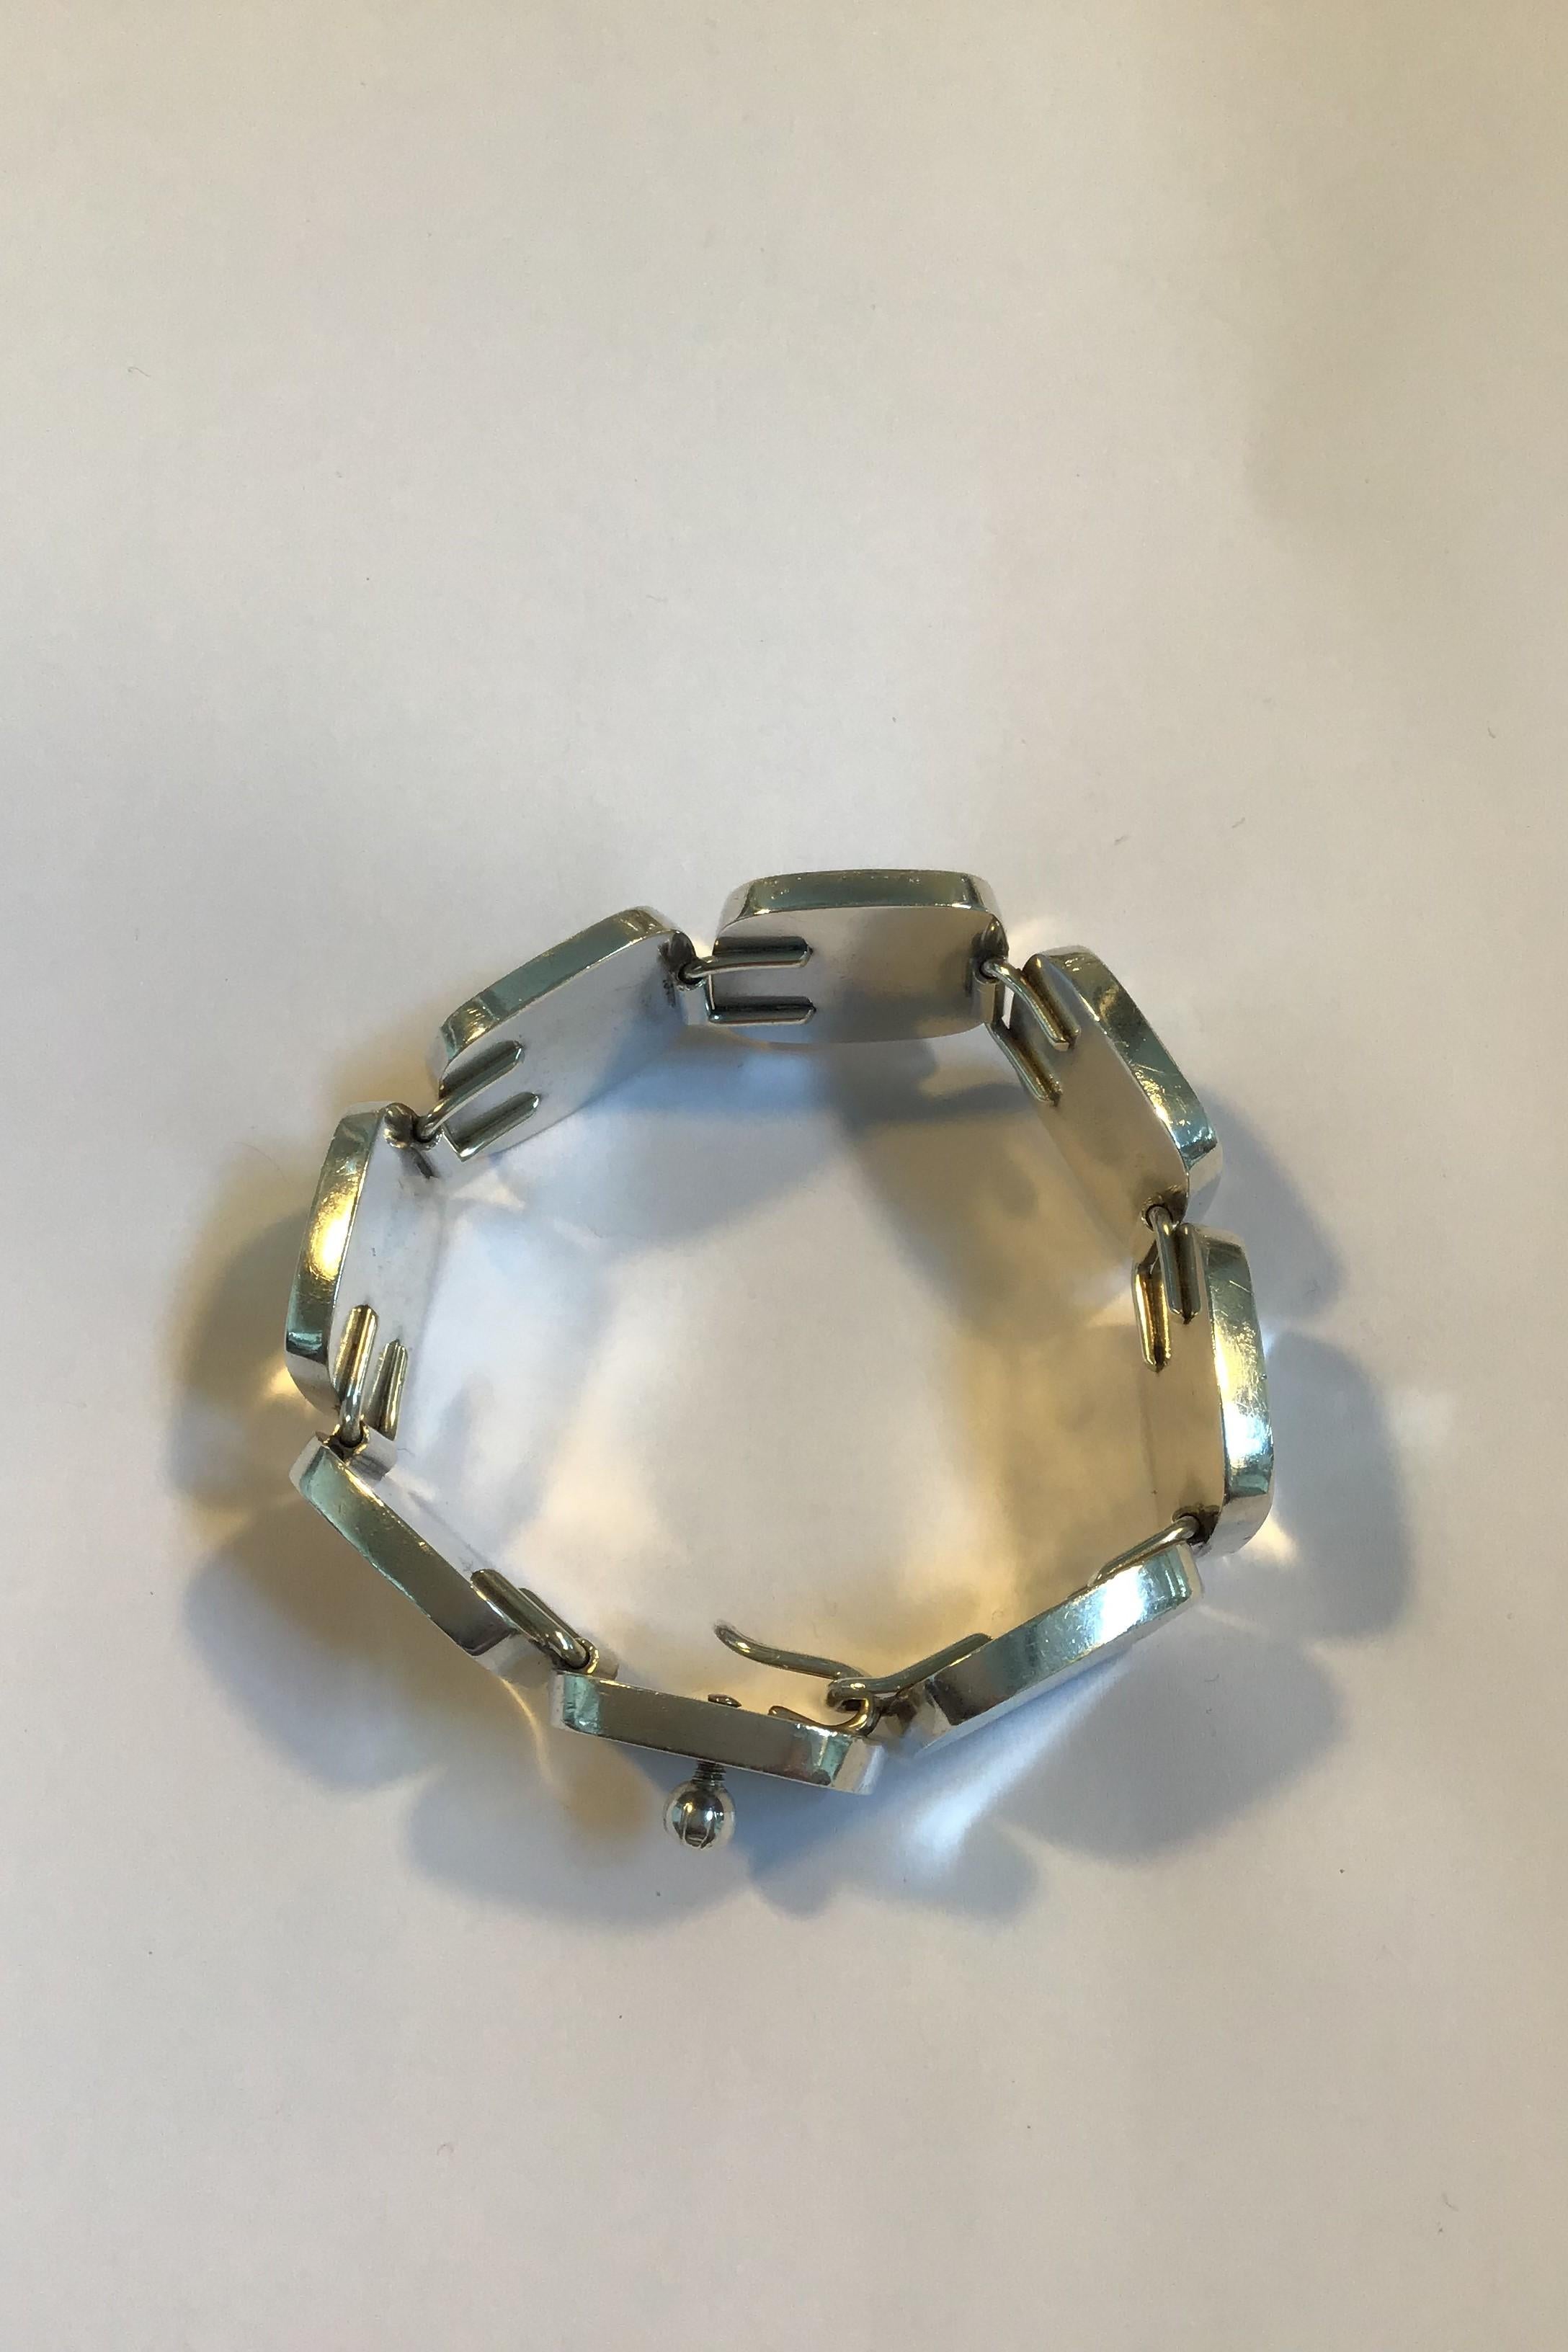 Bent Knudsen Sterling Silver Bracelet No 10 Hook and safety lock 

Measures L 18.5 cm/7.28